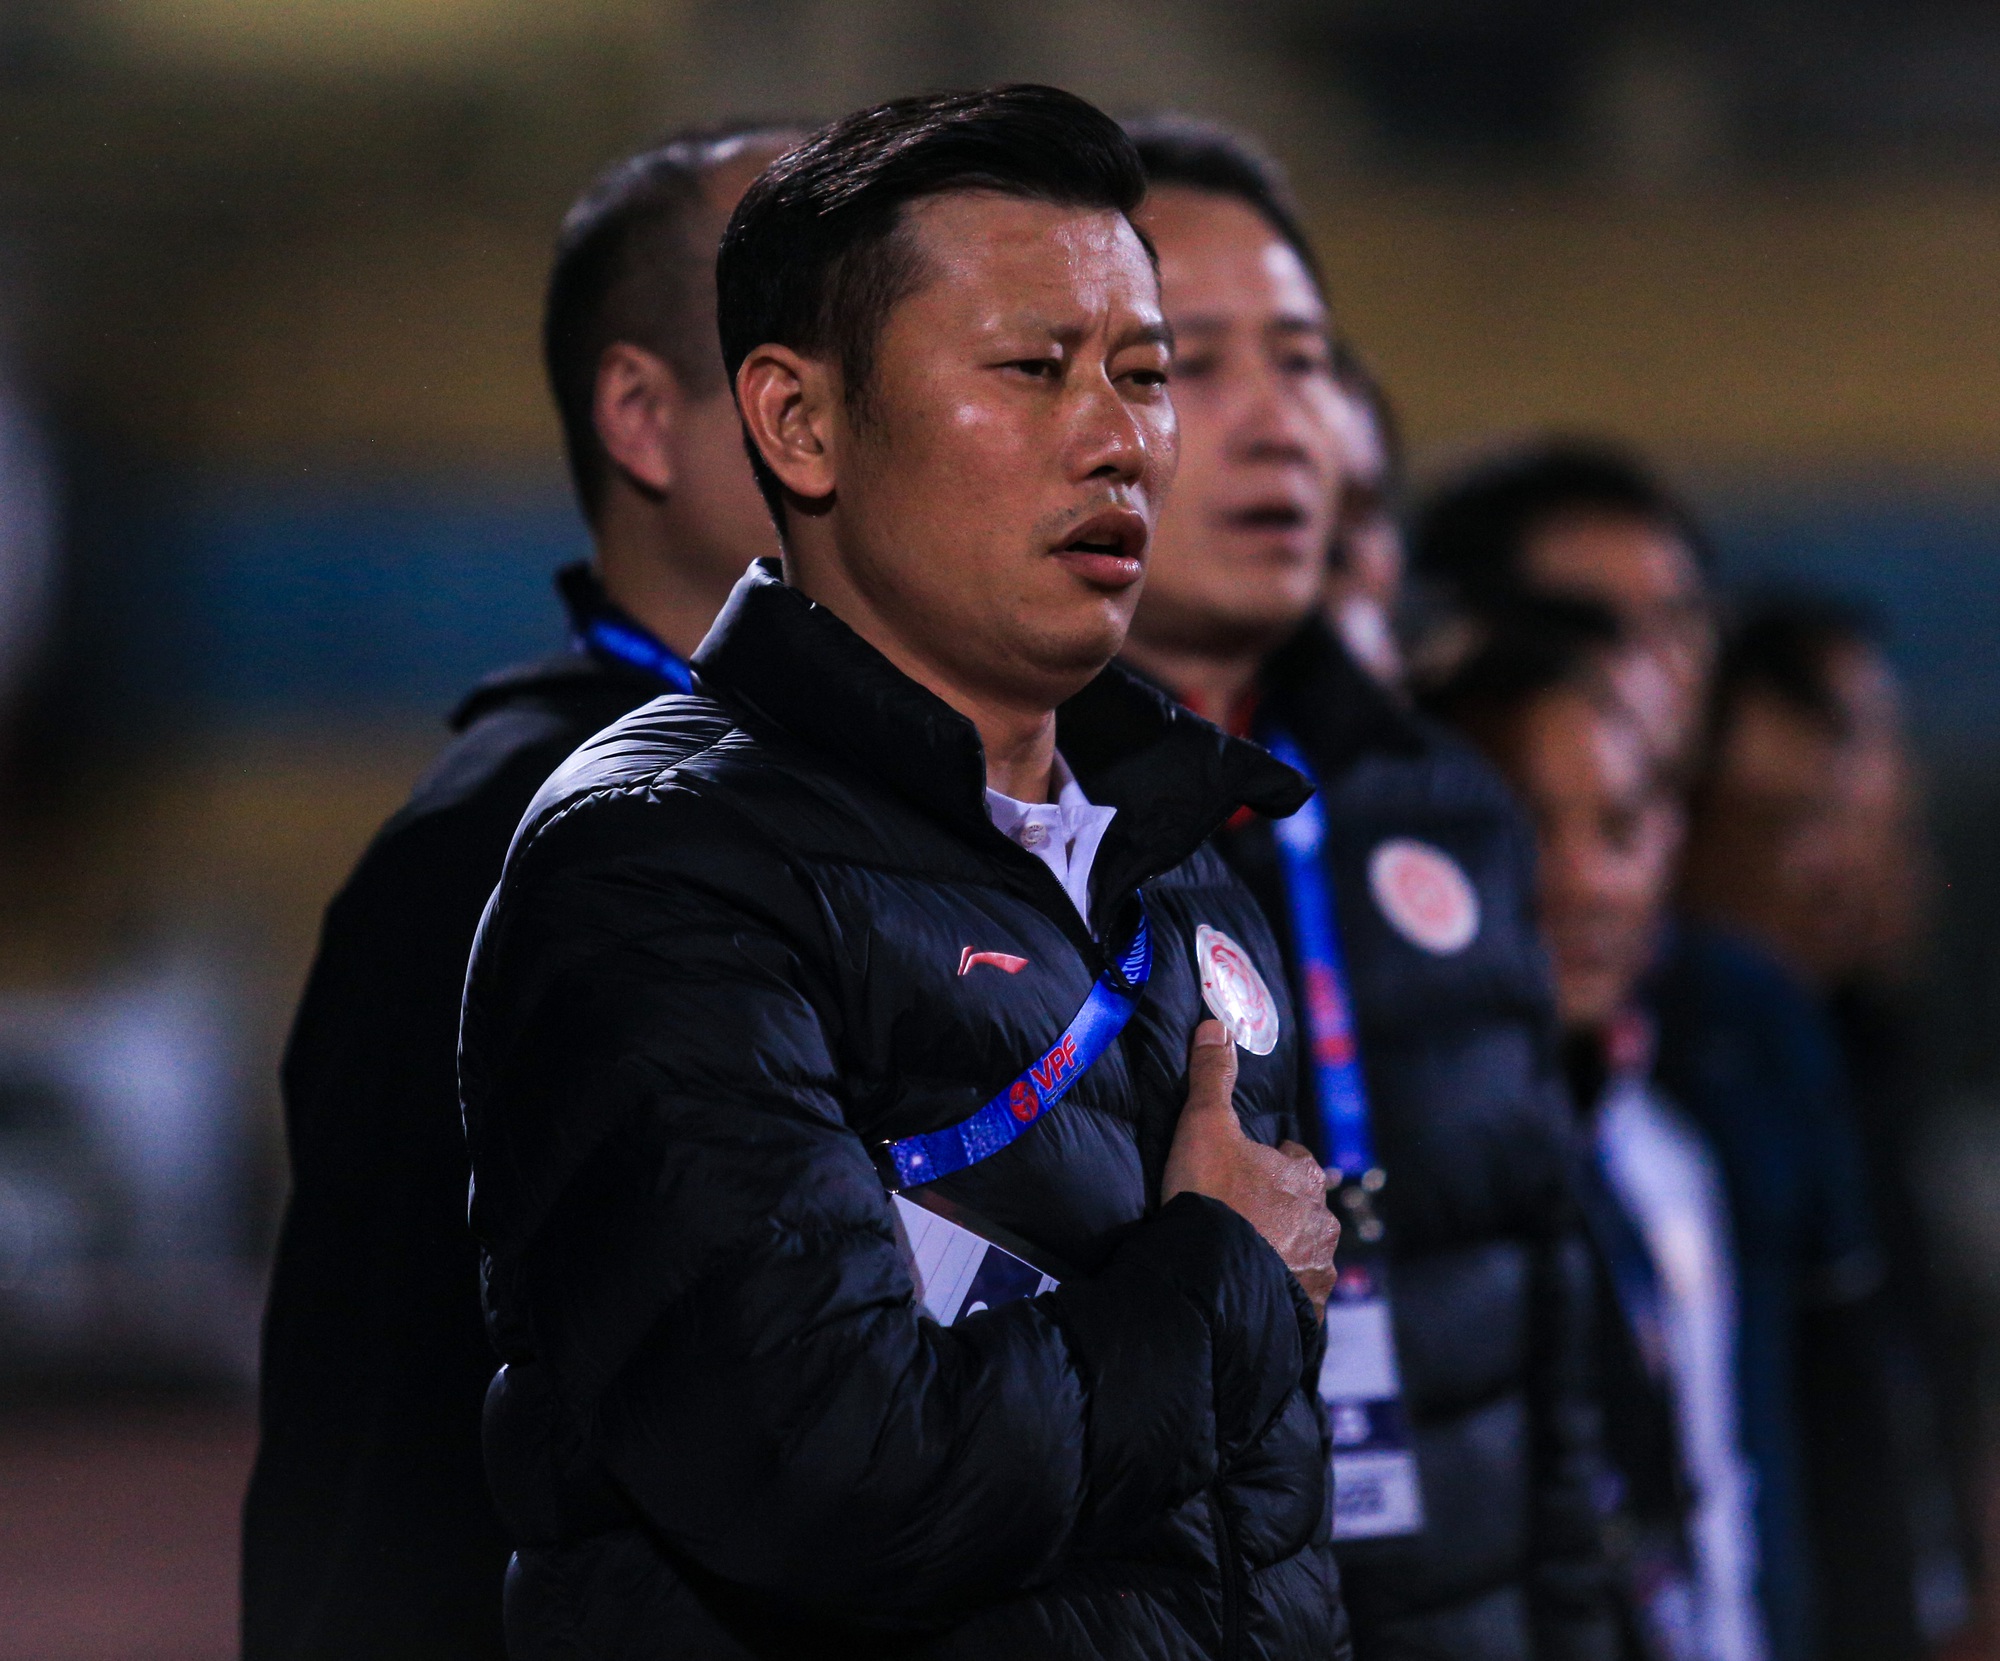 Hoà Hà Nội FC, HLV Thạch Bảo Khanh vẫn dành mưa lời khen cầu thủ Viettel - Ảnh 1.